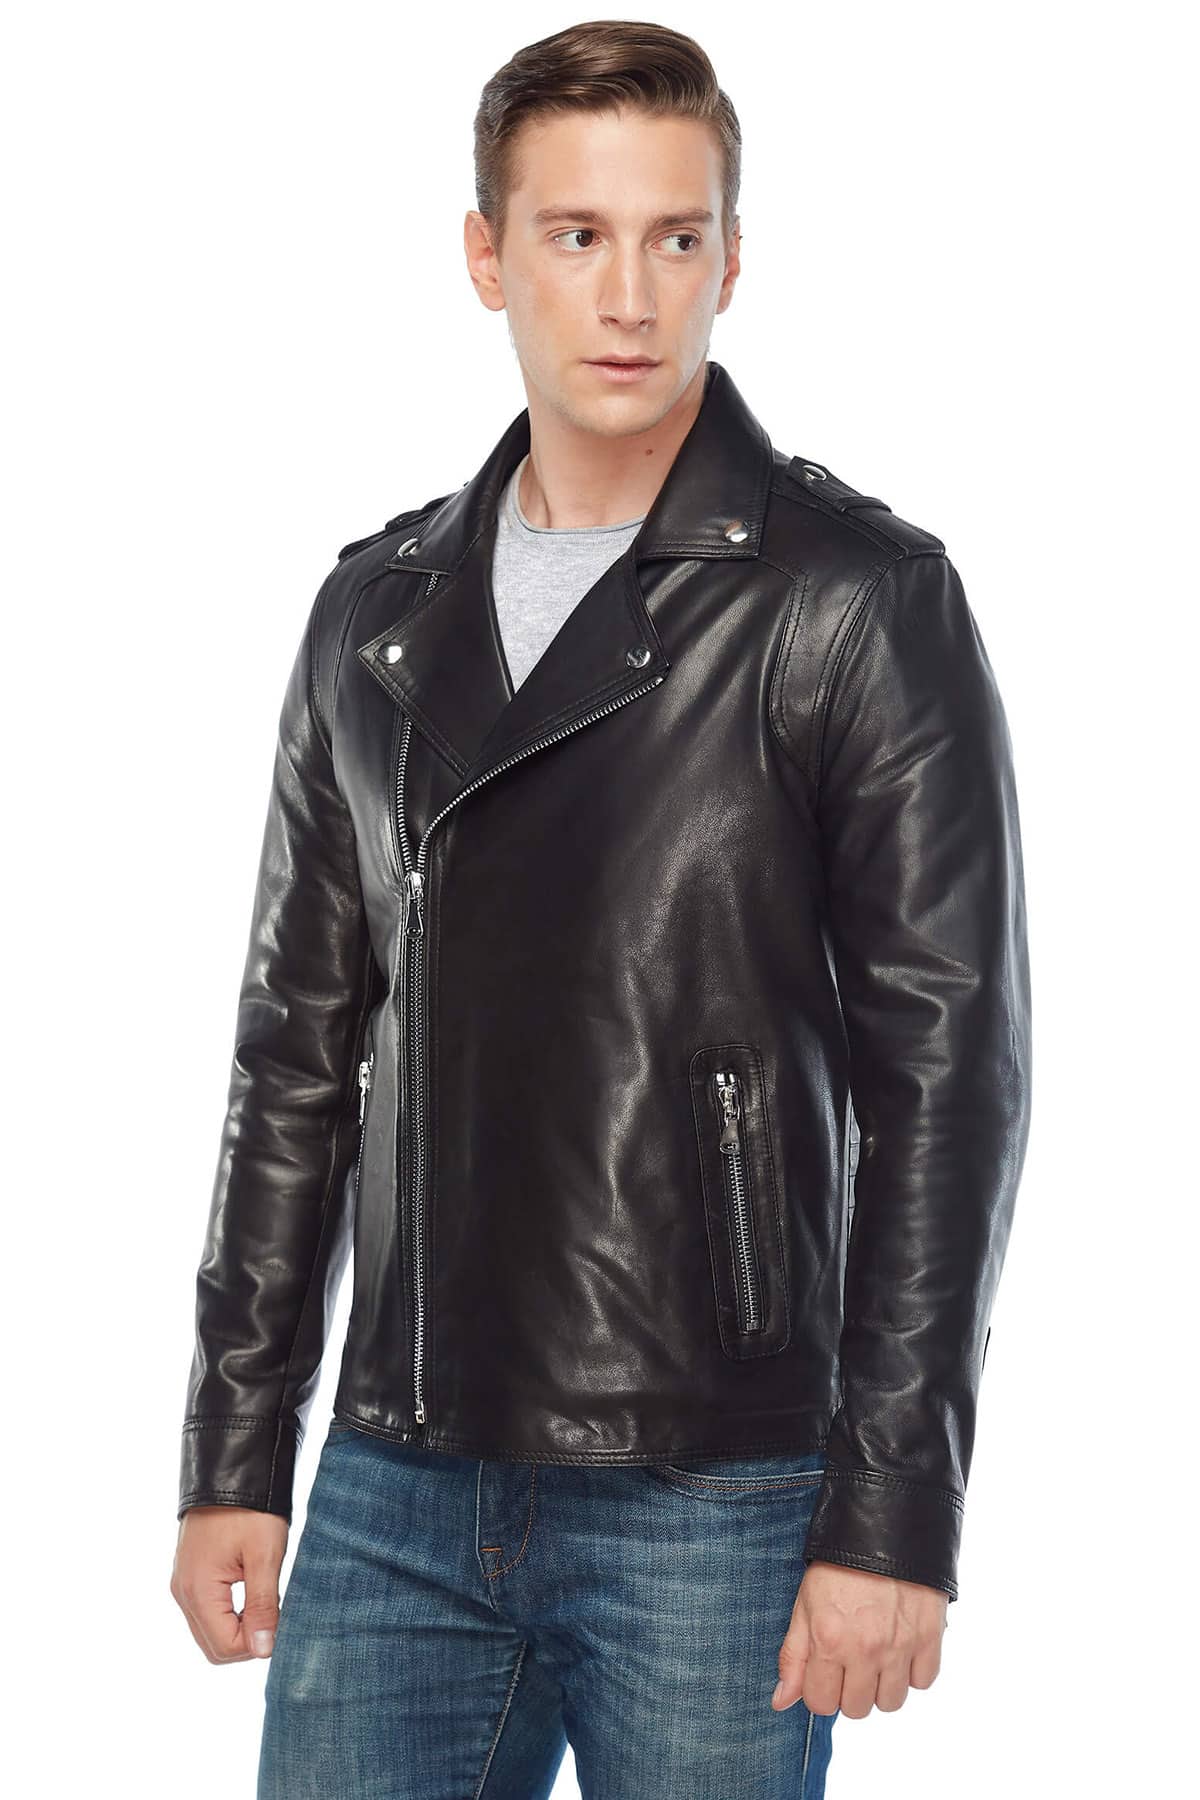 Hugh Dancy Biker Genuine Leather Jacket Black3